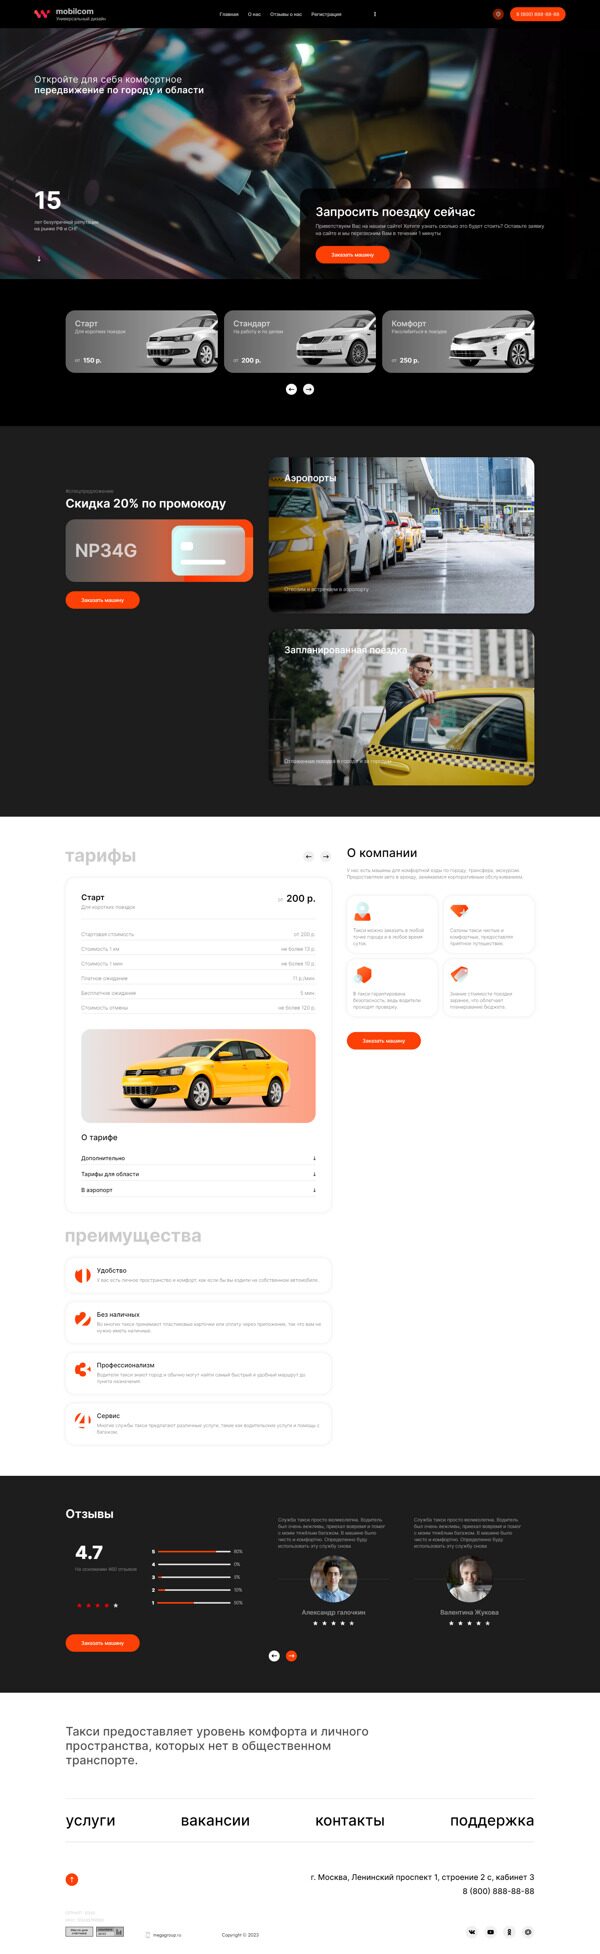 Готовый Сайт-Бизнес № 5347110 - Такси, междугородние пассажирские перевозки (Десктопная версия)